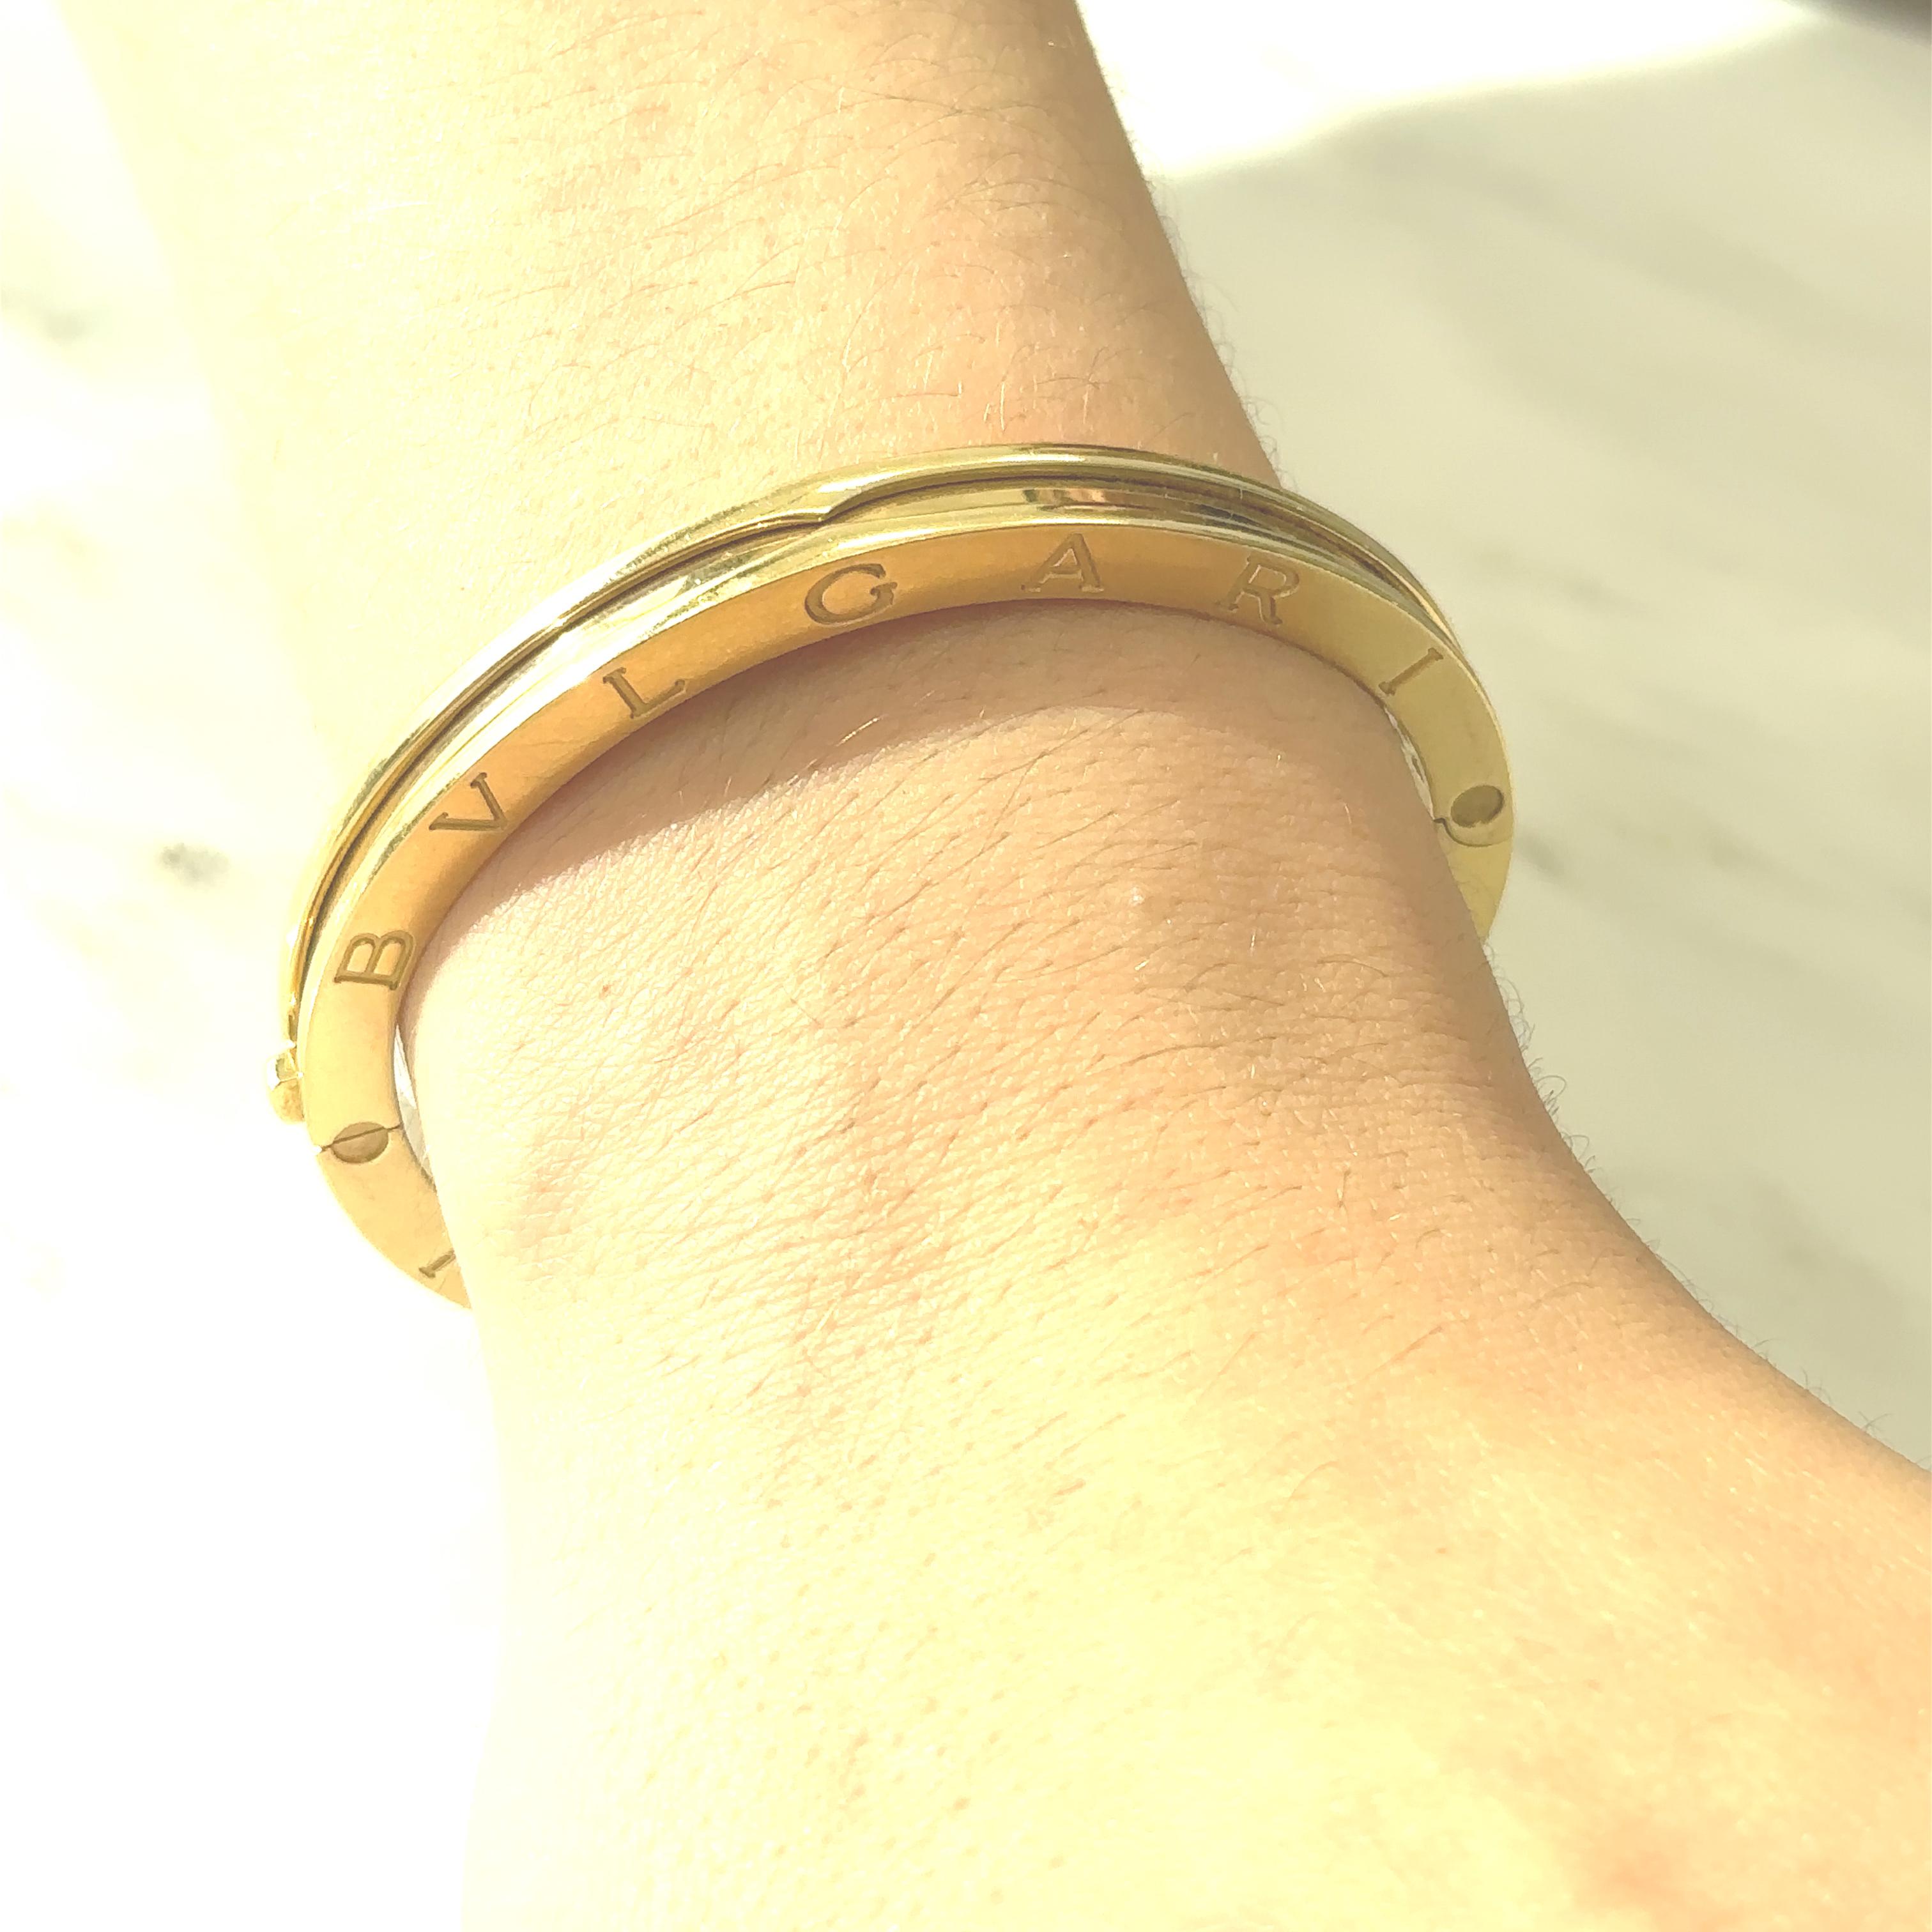 Ce bracelet en or Bulgari 'B.Zero1' est en or 18kt signé Bulgari. Fabriquées en Italie. Environ 47 grammes. Circonférence intérieure de 6,5 pouces. 

Le bracelet B.Zero1 n'est plus disponible en or jaune chez Bulgari, ce qui en fait une pièce rare à